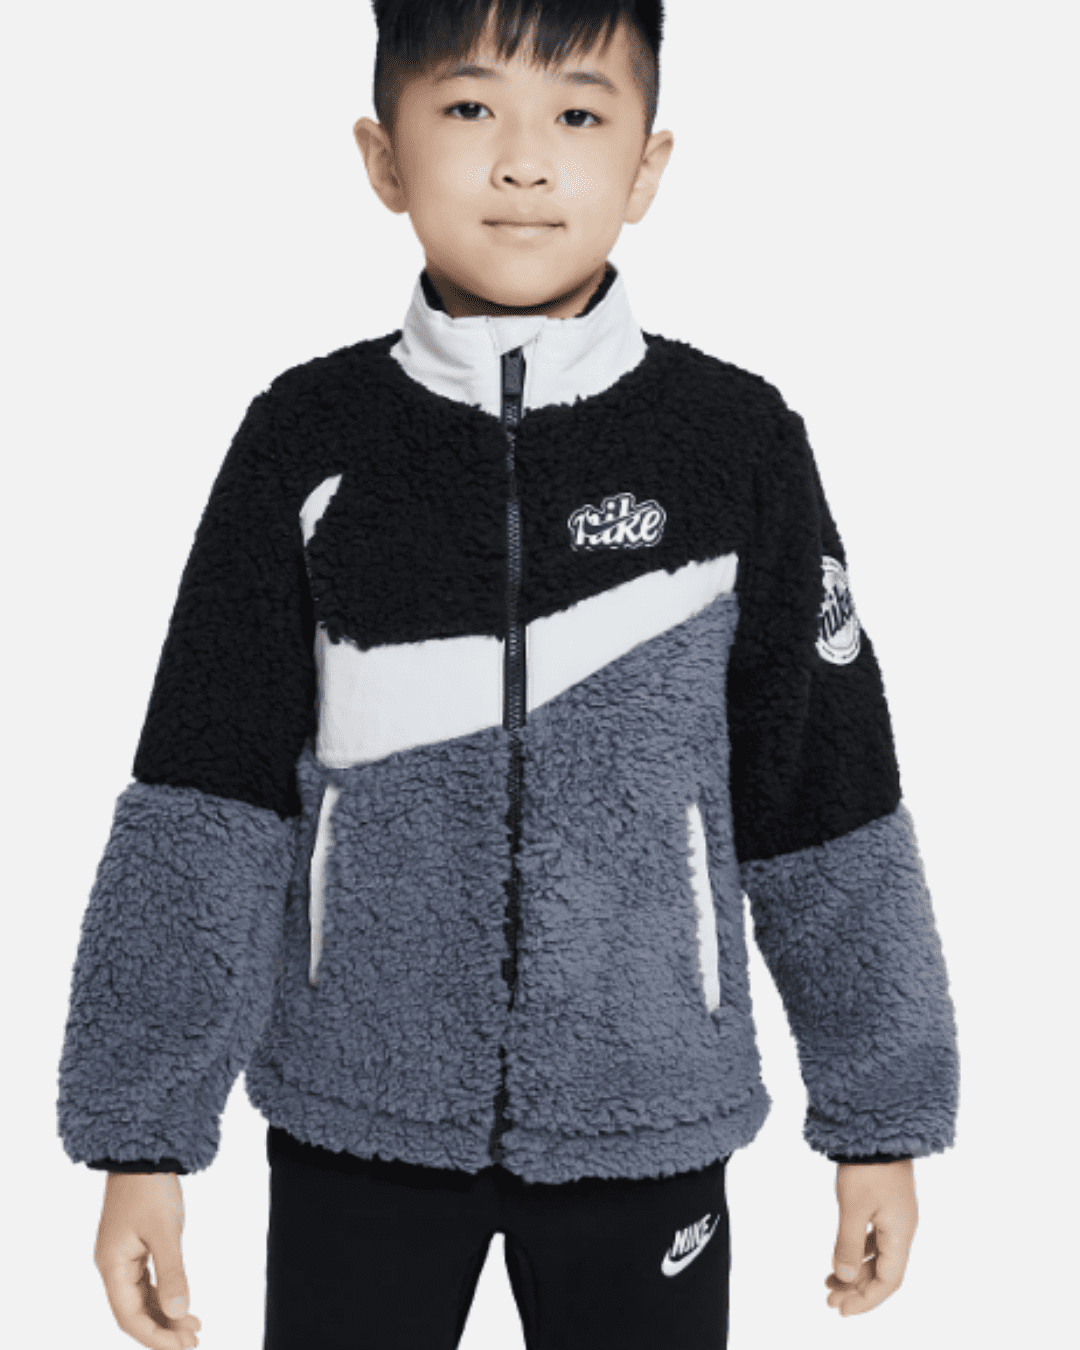 Veste Nike Sherpa Jacket Enfant - Noir/Gris